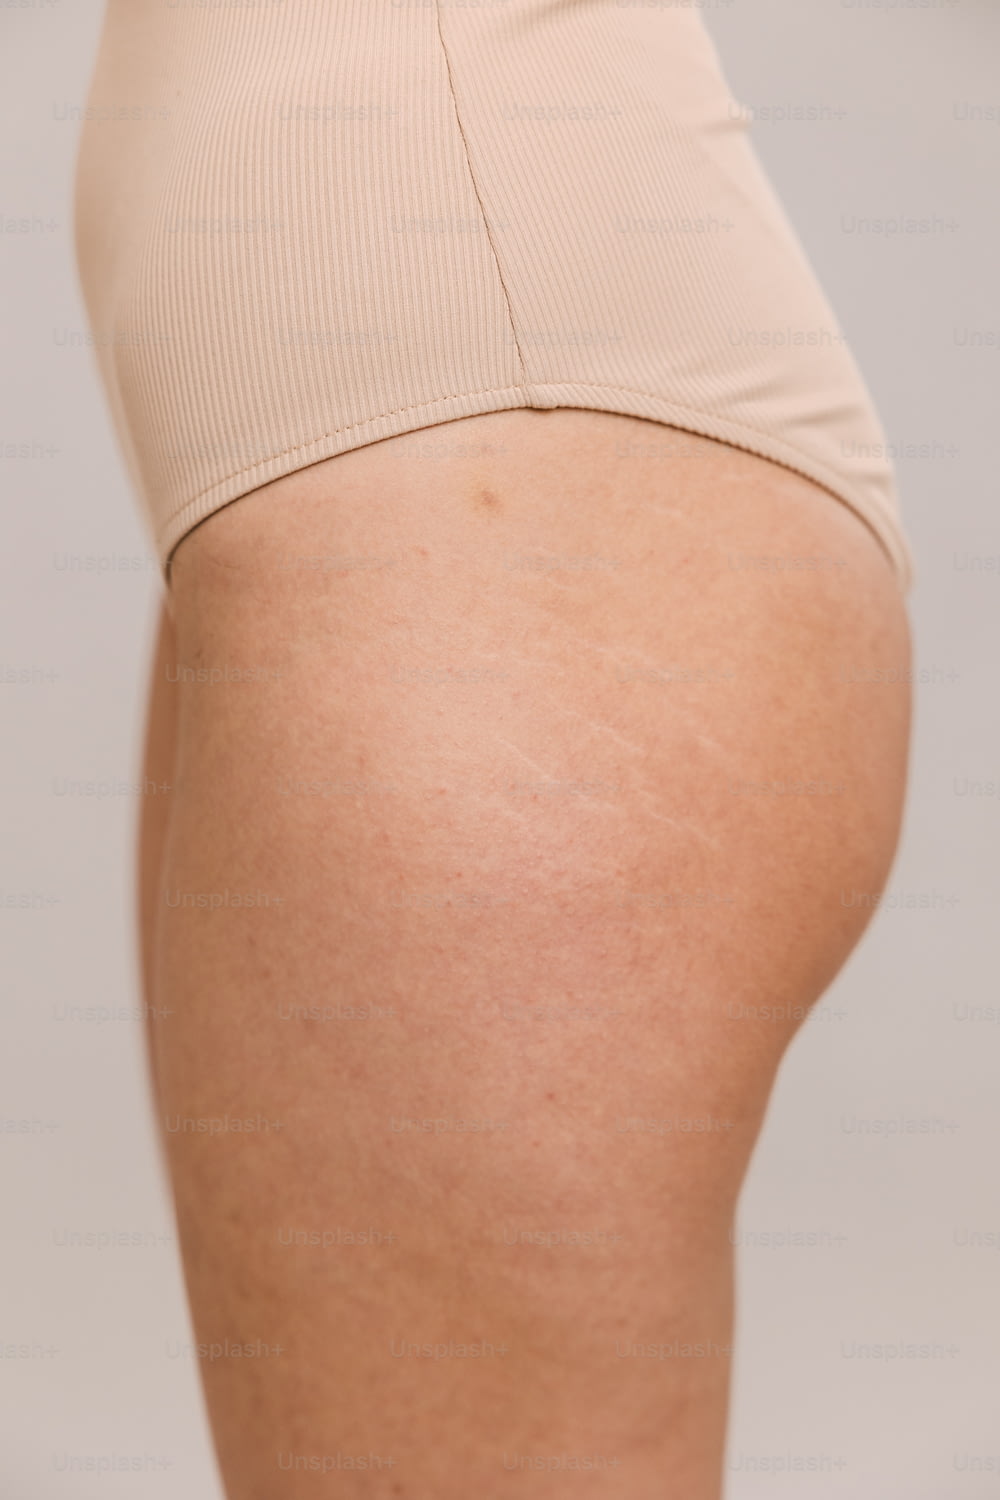 Un primer plano del trasero de una mujer mostrando su trasero